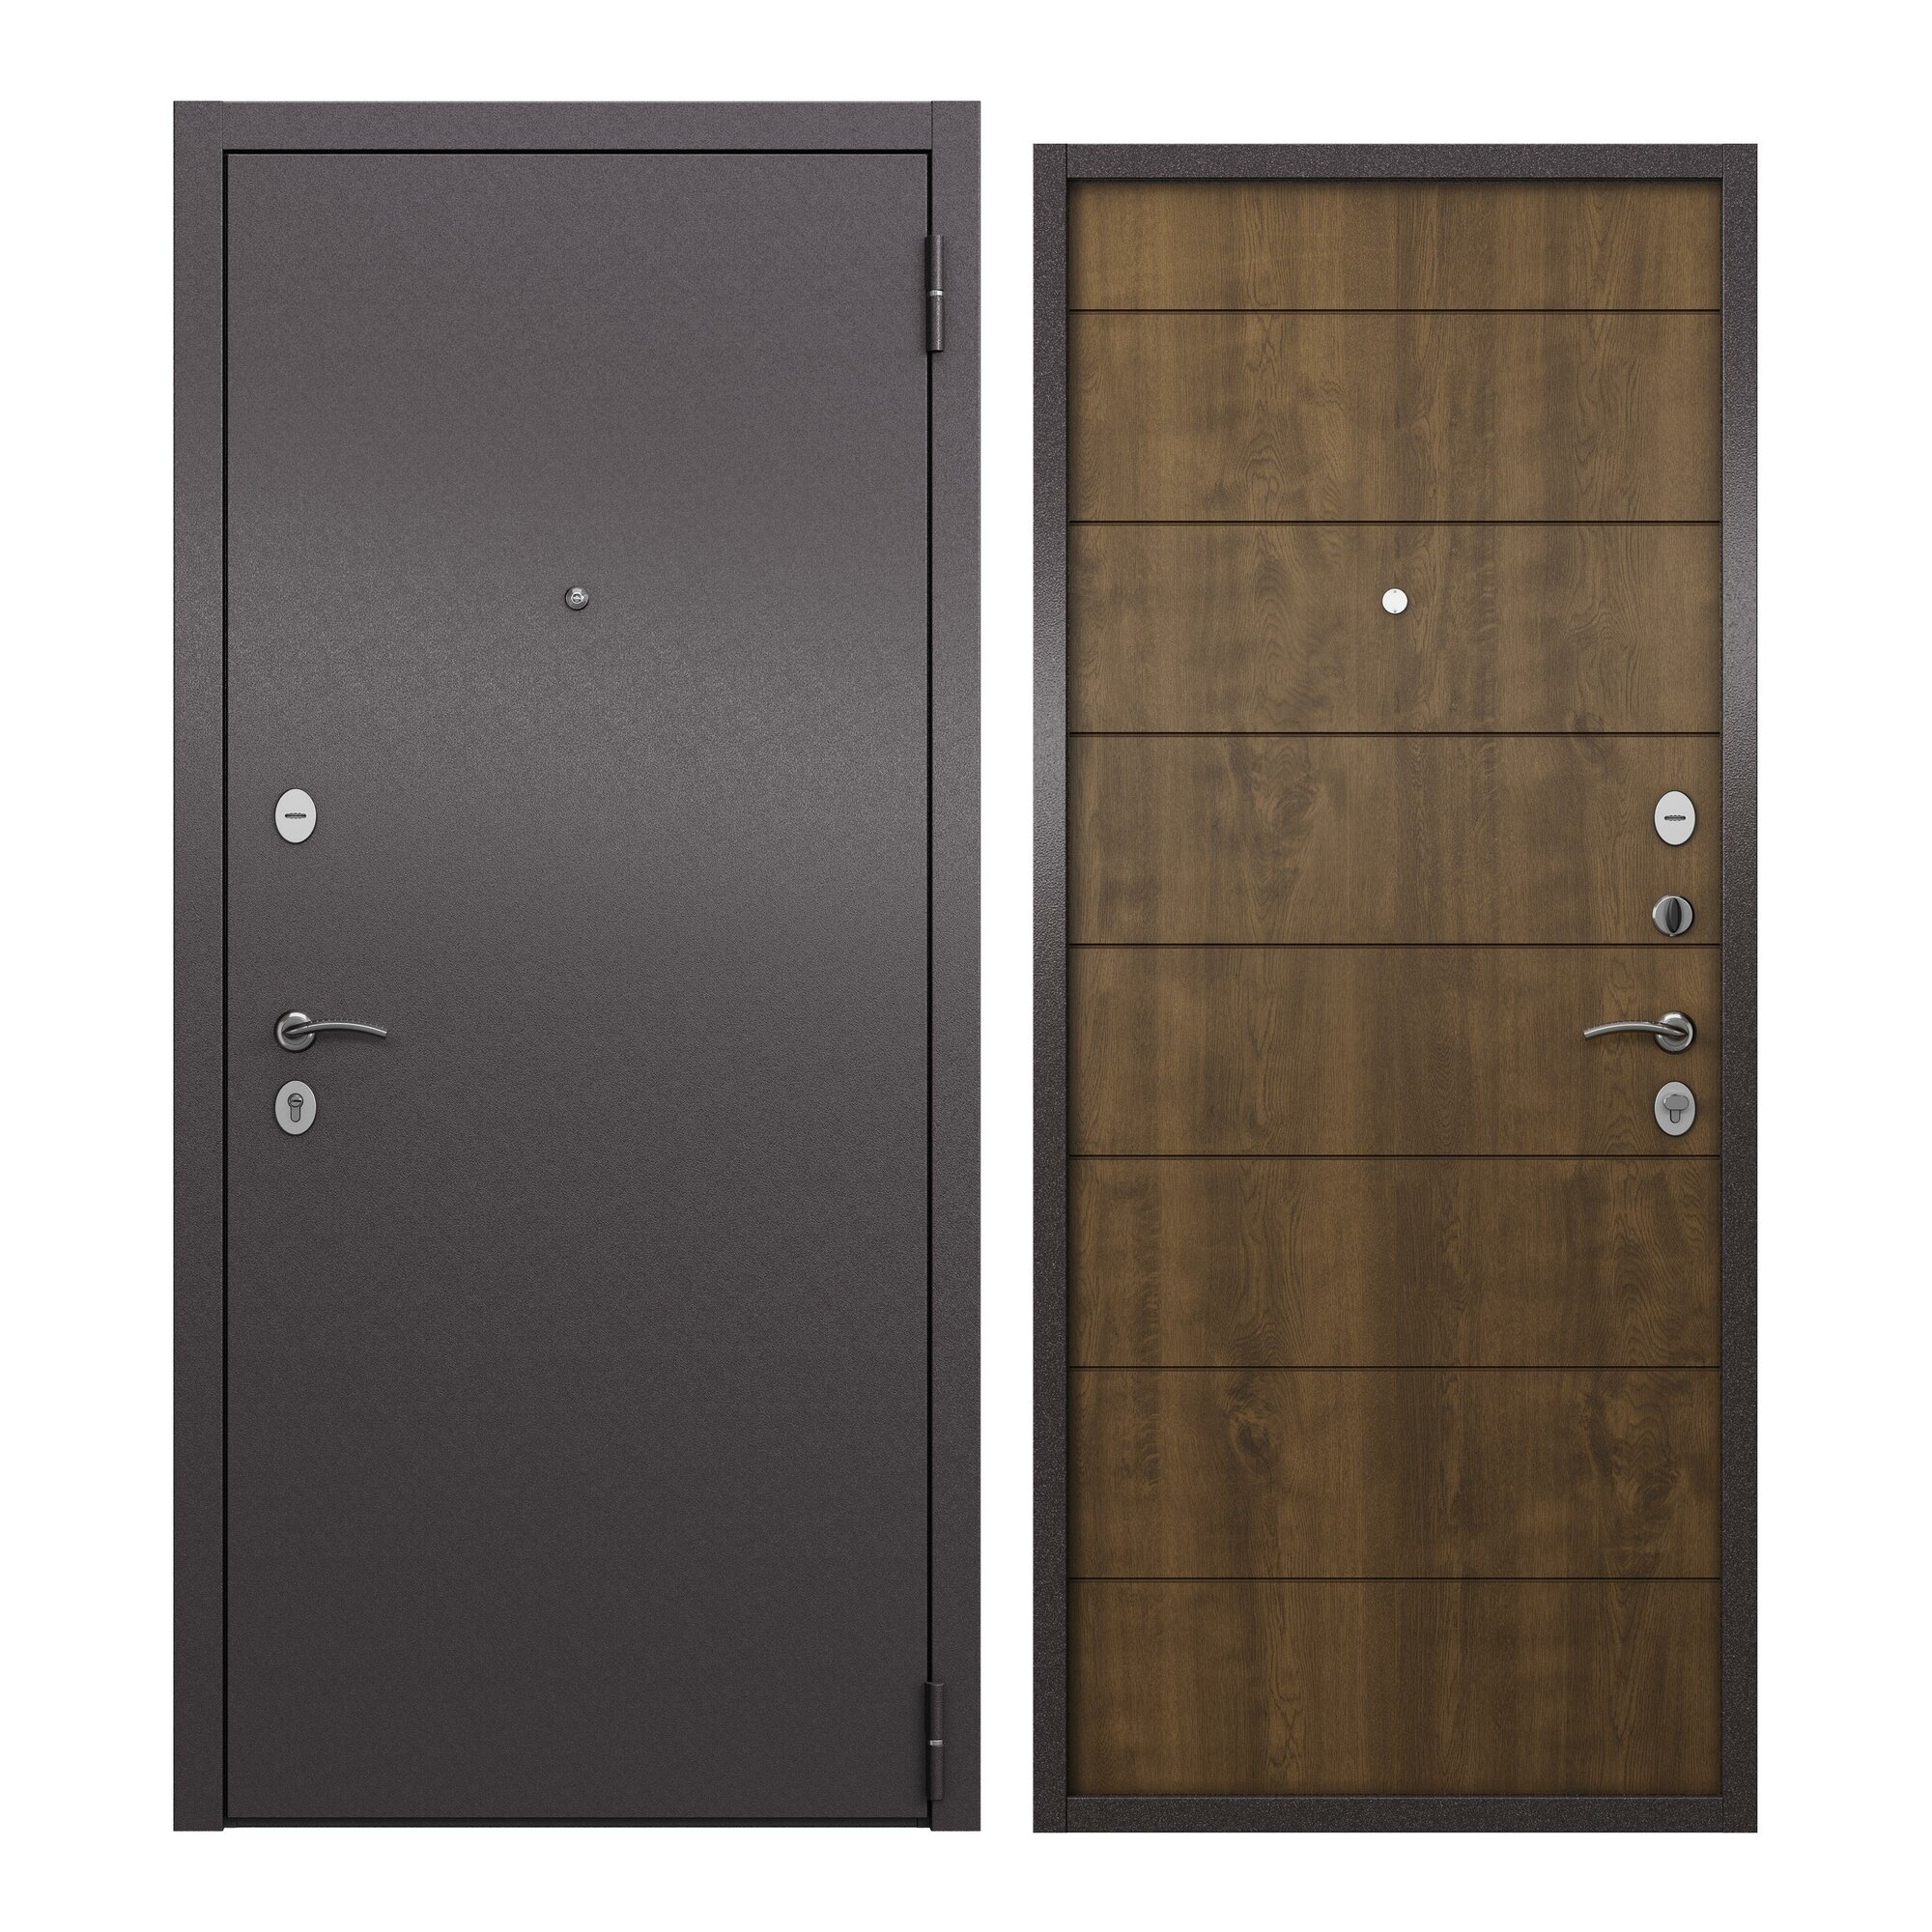 Дверь входная для квартиры ProLine металлическая Apartment 960х2050 левая антивандальное покрытие два уплотнителя замки 4го и 2го класса коричневый